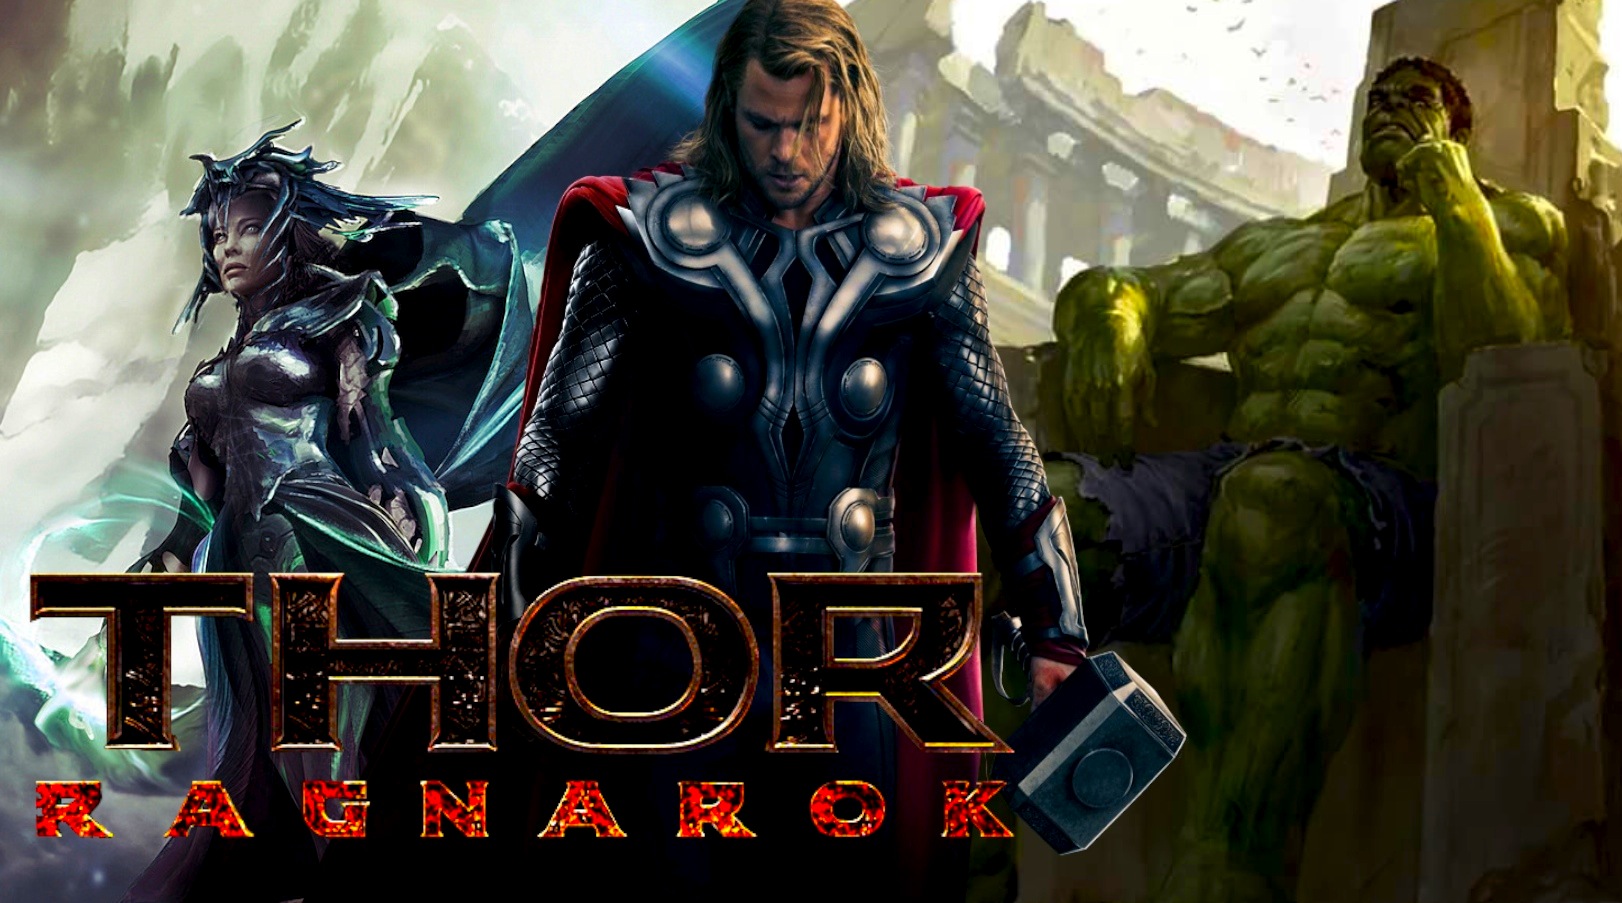 Primeras imágenes del rodaje de 'Thor: Ragnarok'